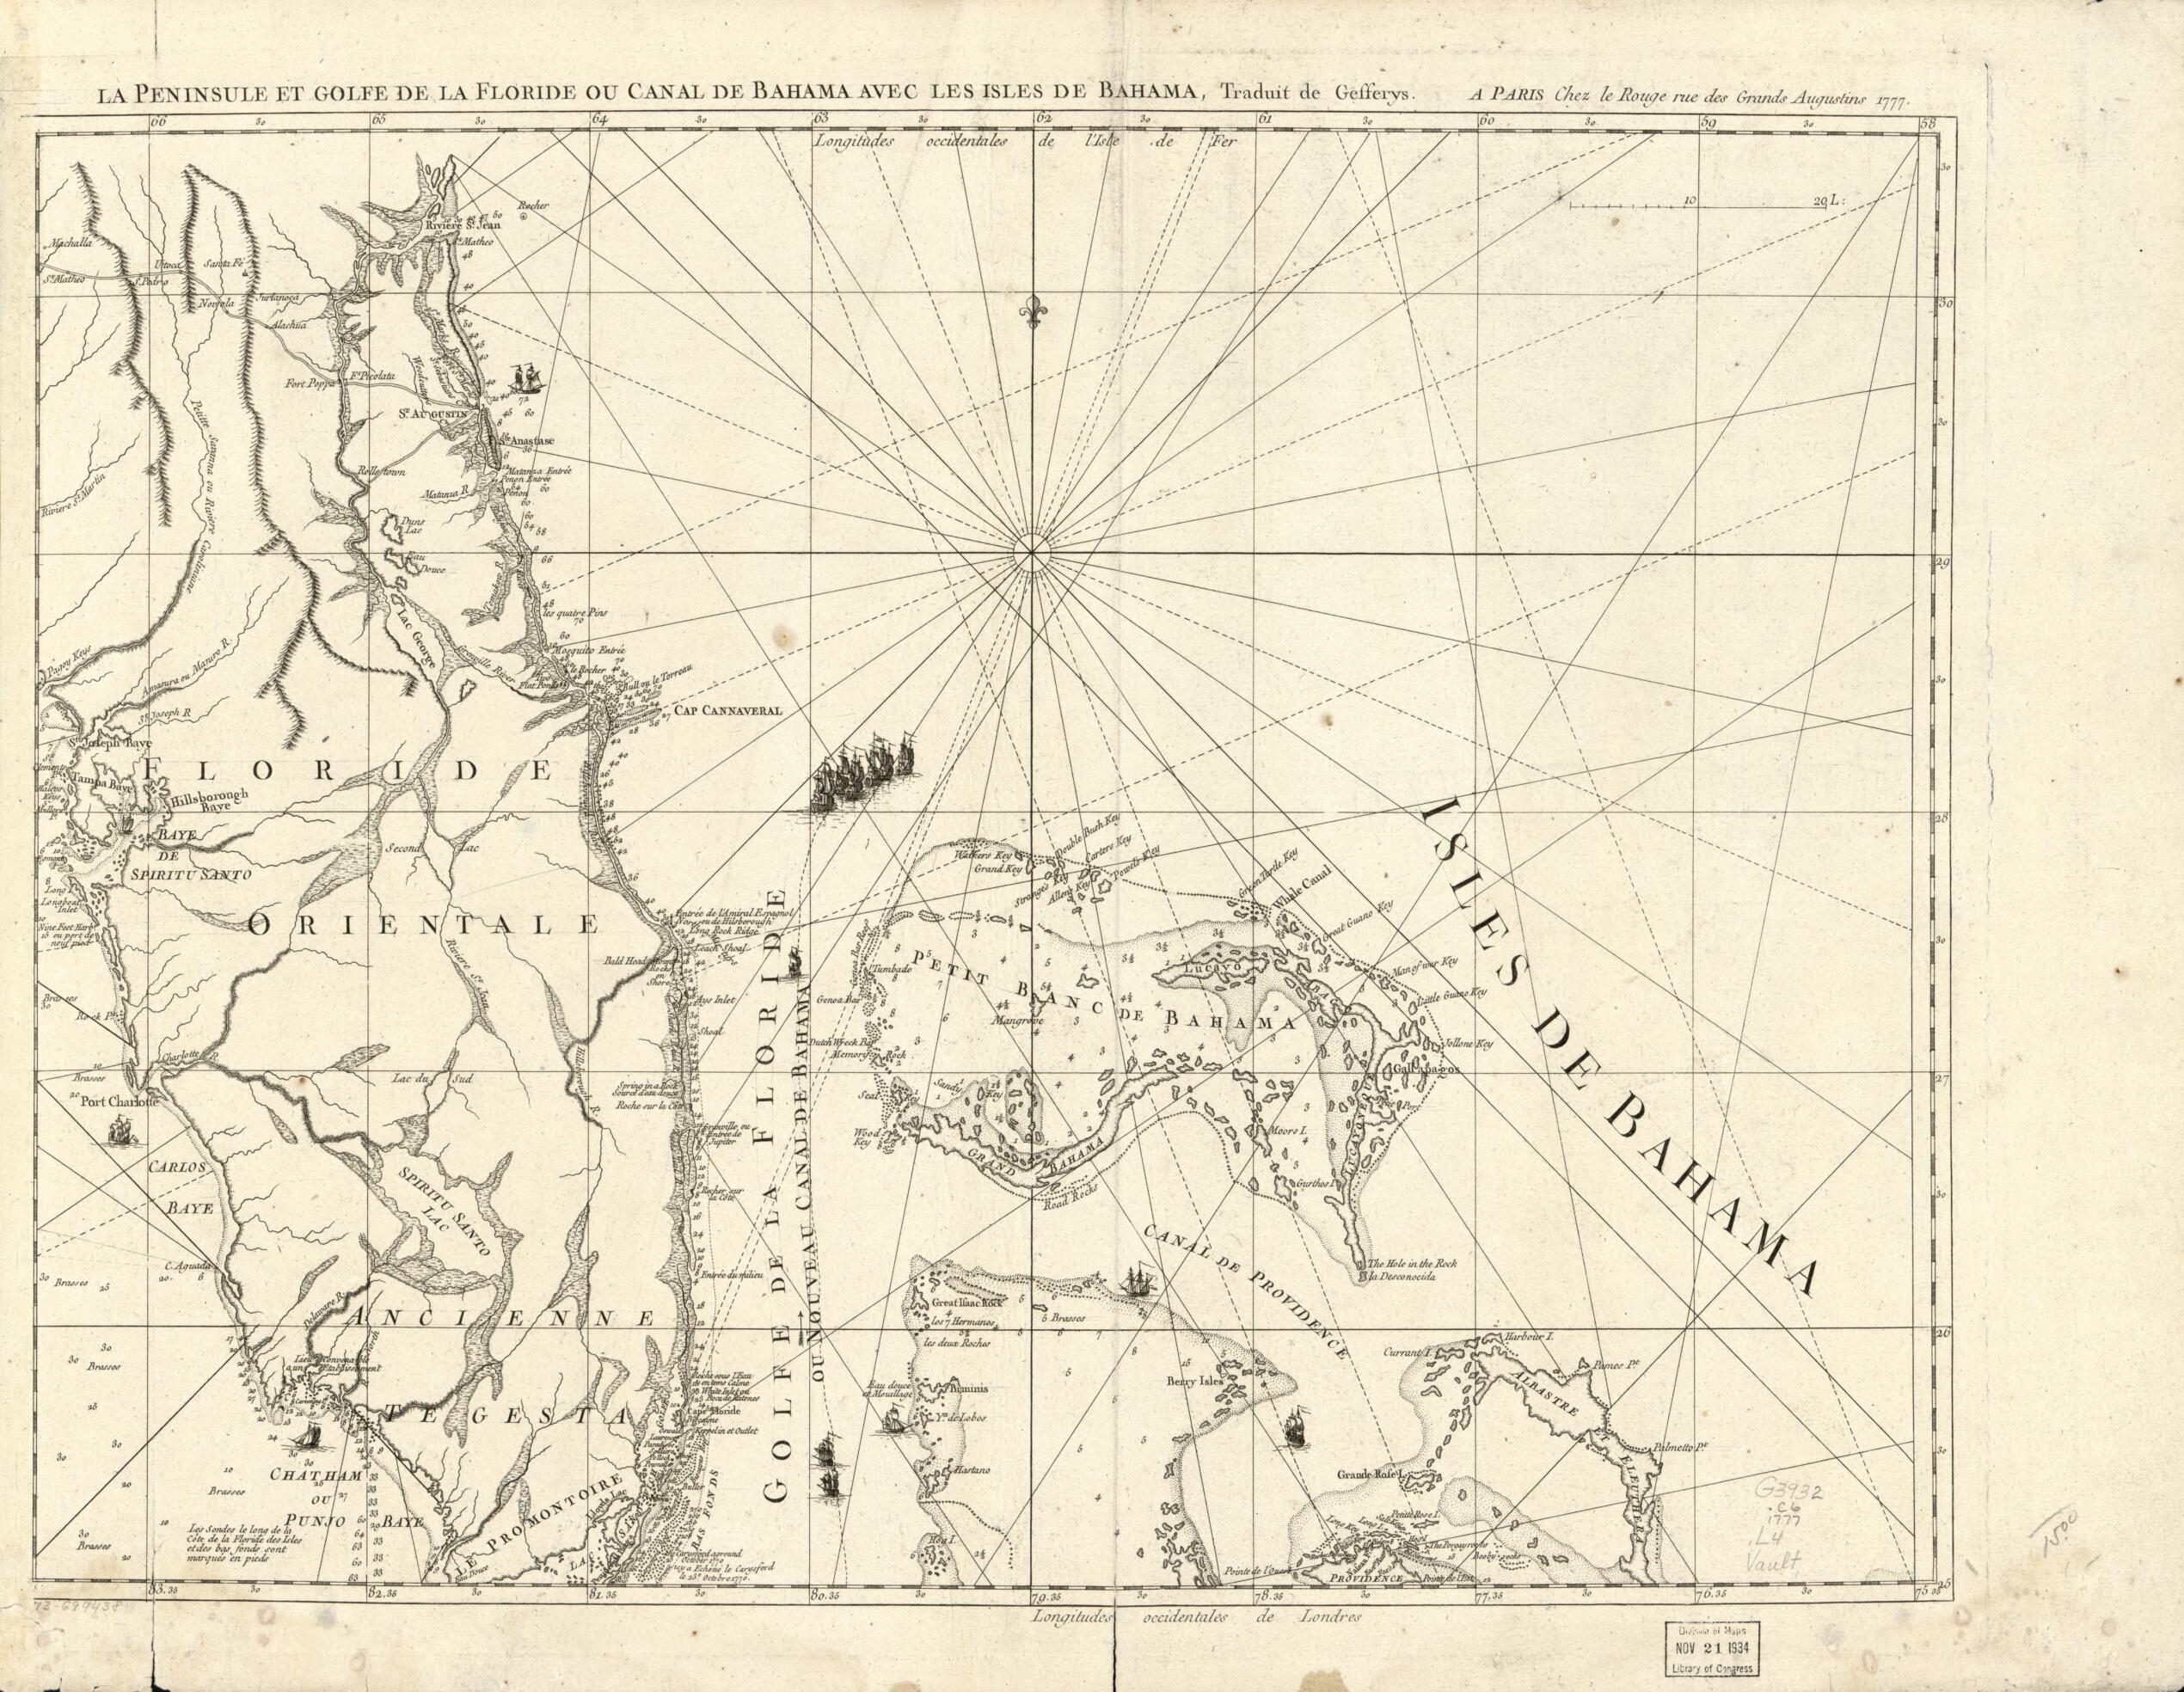 This old map of Carte De La Floride Occidentale Et Louisiane. La Peninsule Et Golfe De La Floride Ou Canal De Bahama Avec Les Isles De Bahama from 1777 was created by Thomas Jefferys,  Louis in 1777